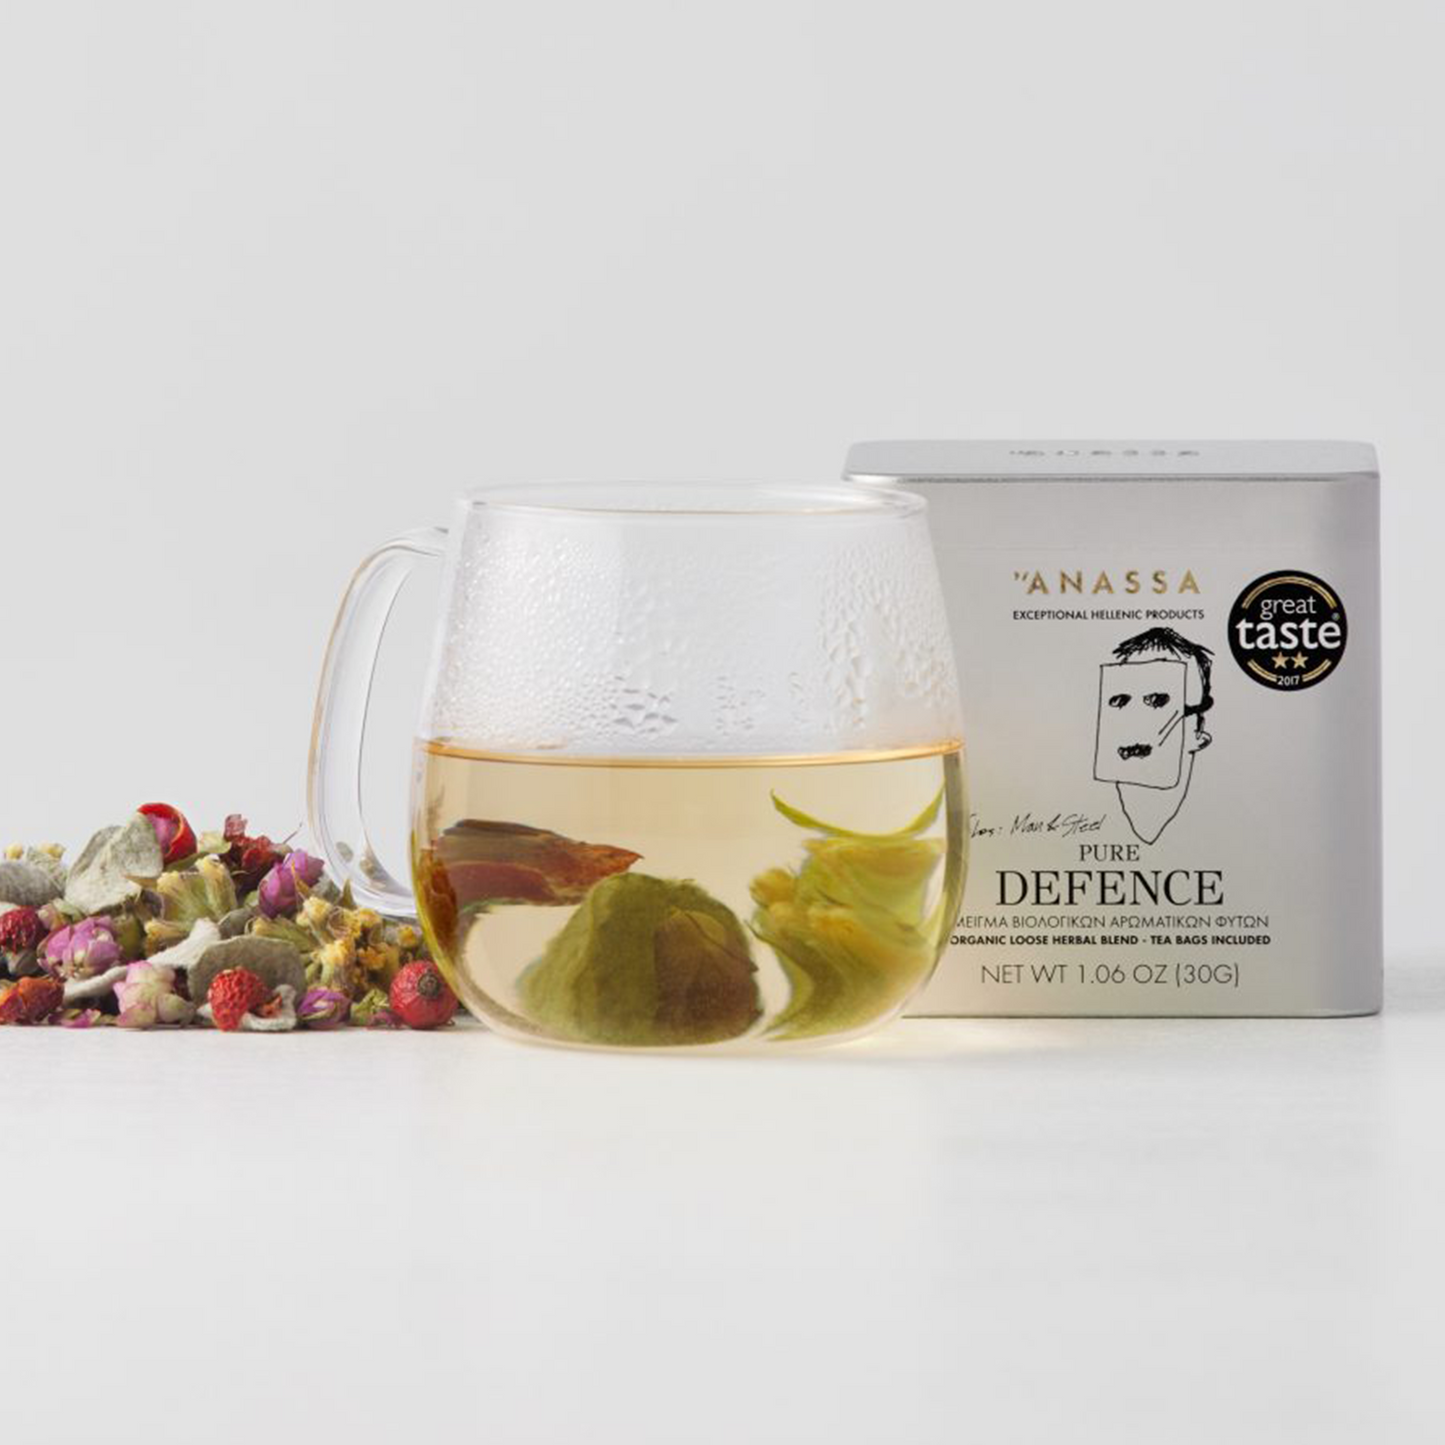 Anassa Premium Tee Pure Defence lose